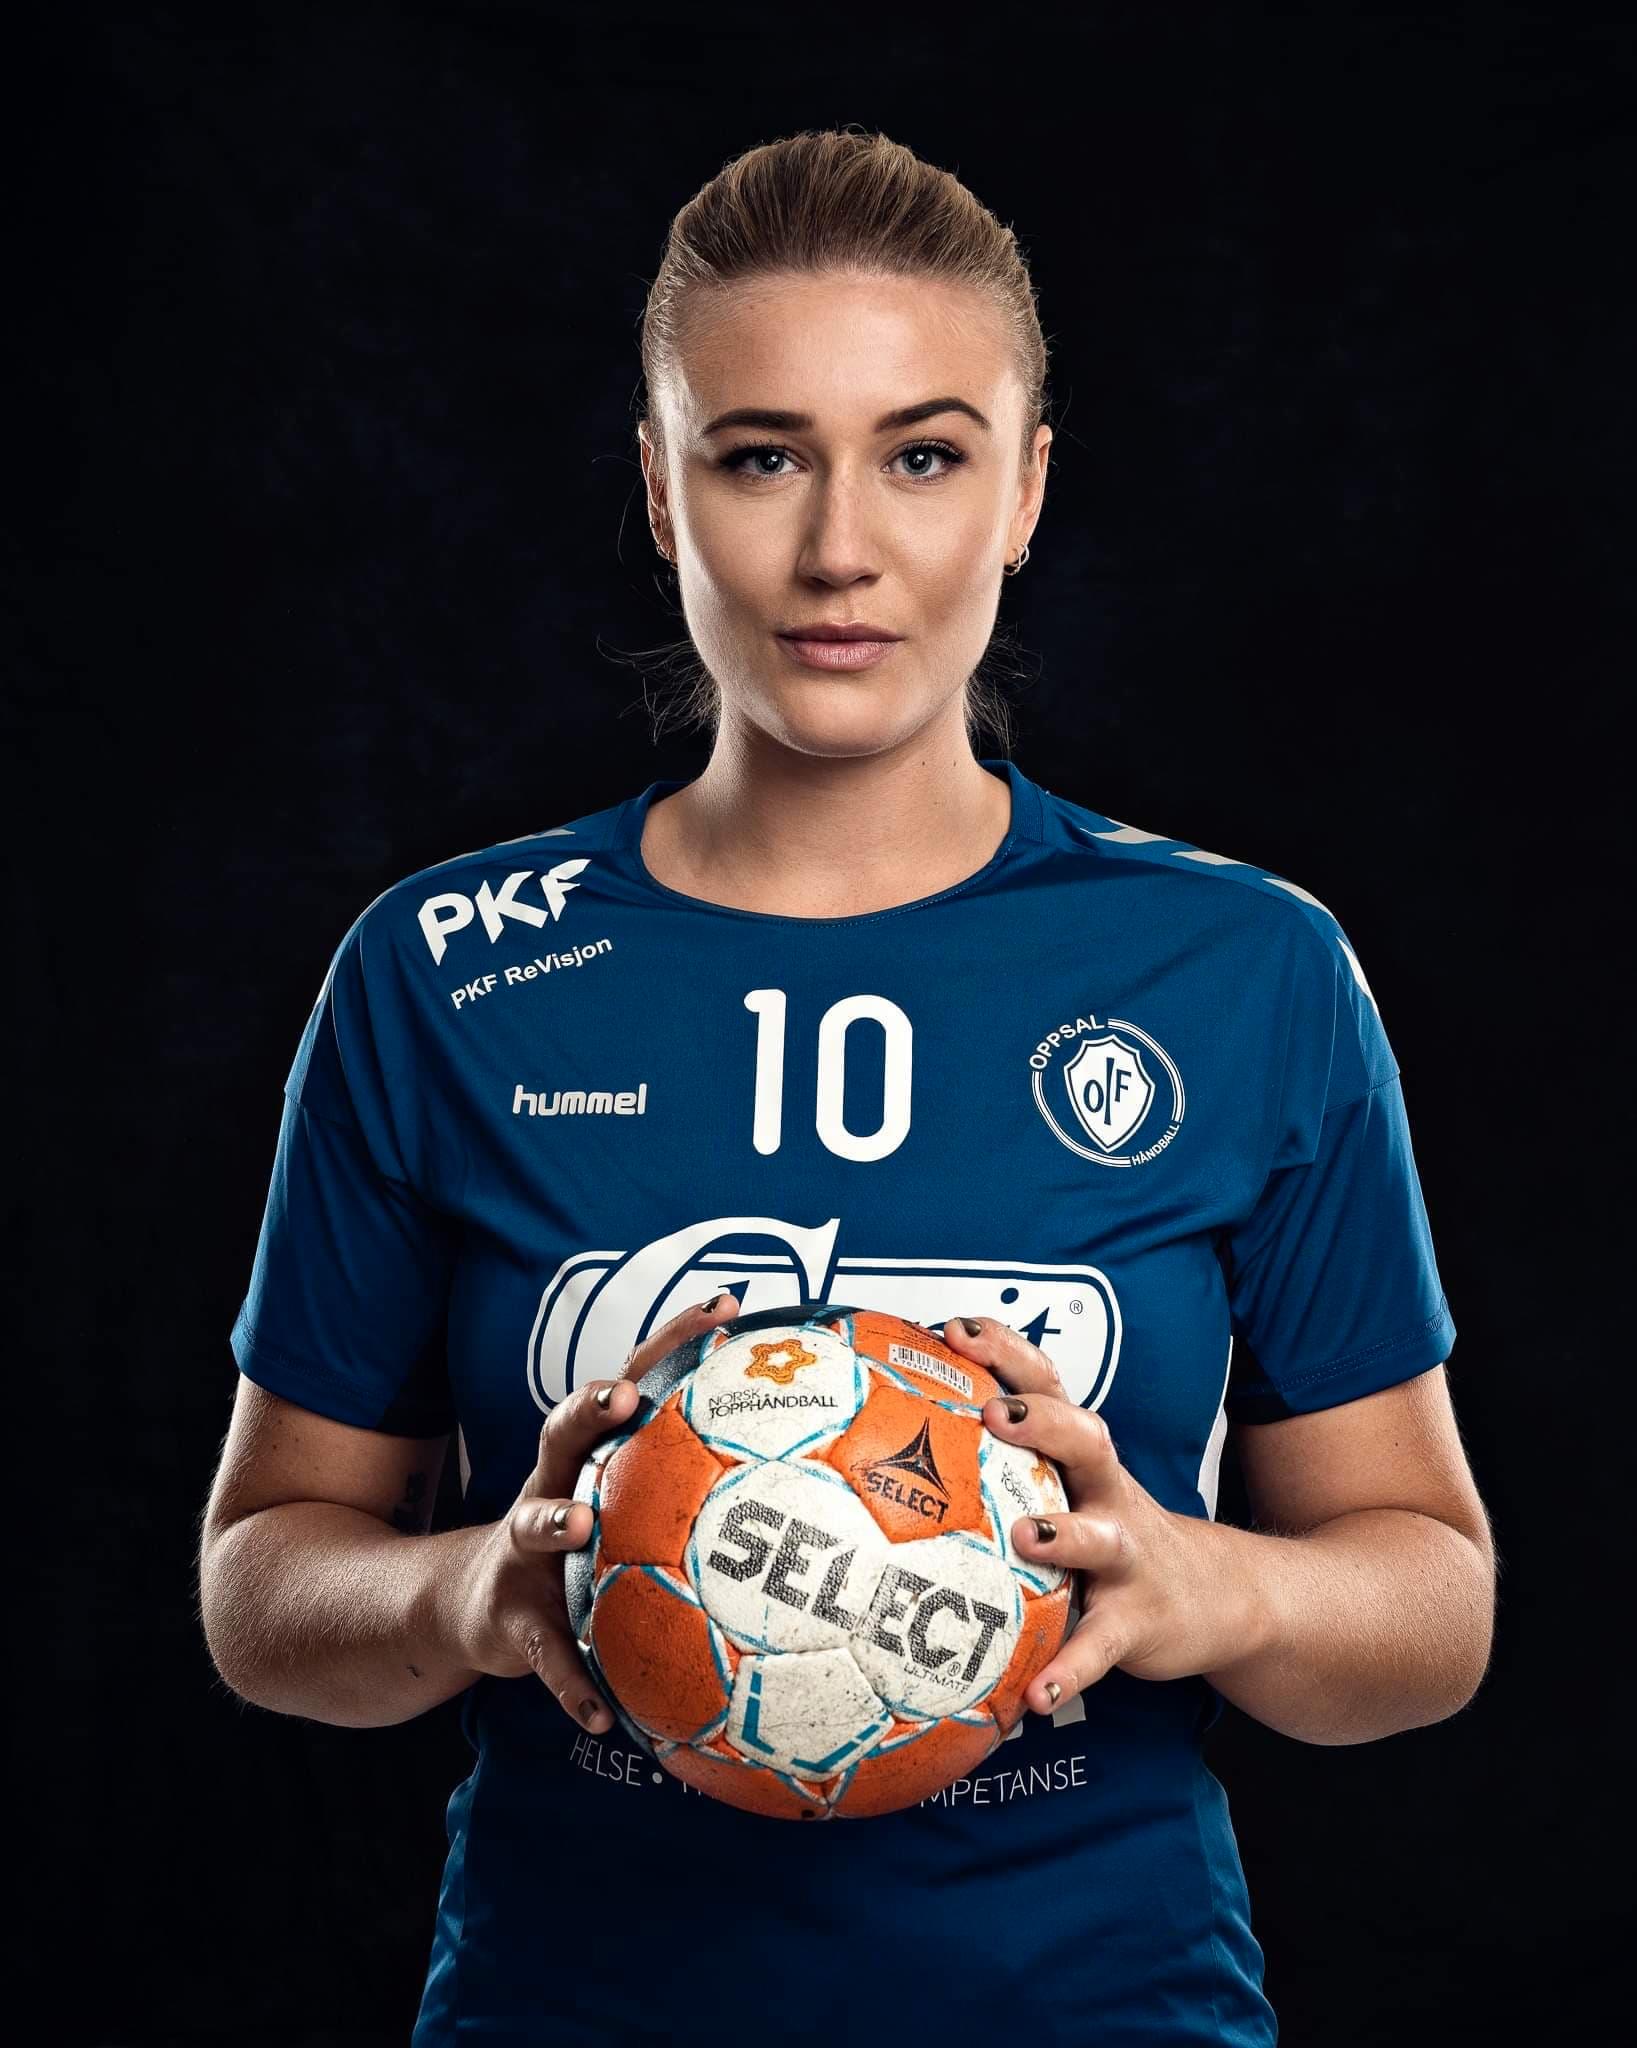 Sara Rønningen spiller for Oppsal håndball i eliteserien.